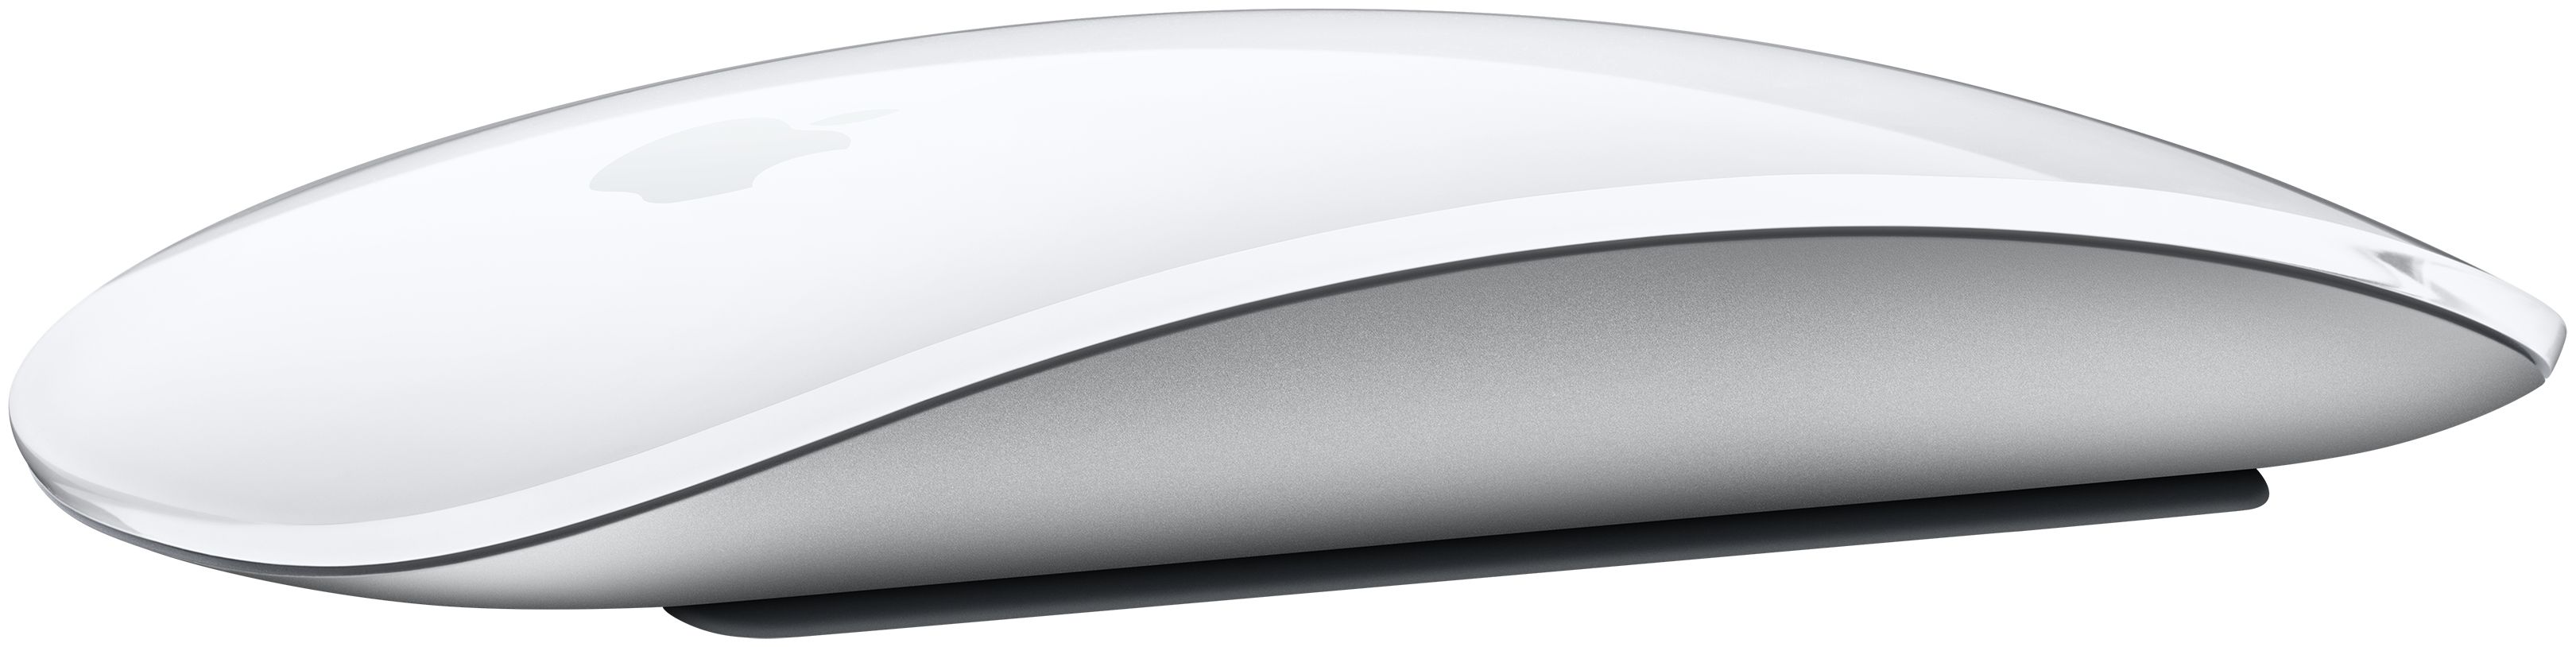 Mouse von Büro (Weiß) Technomarkt Magic expert Apple Maus